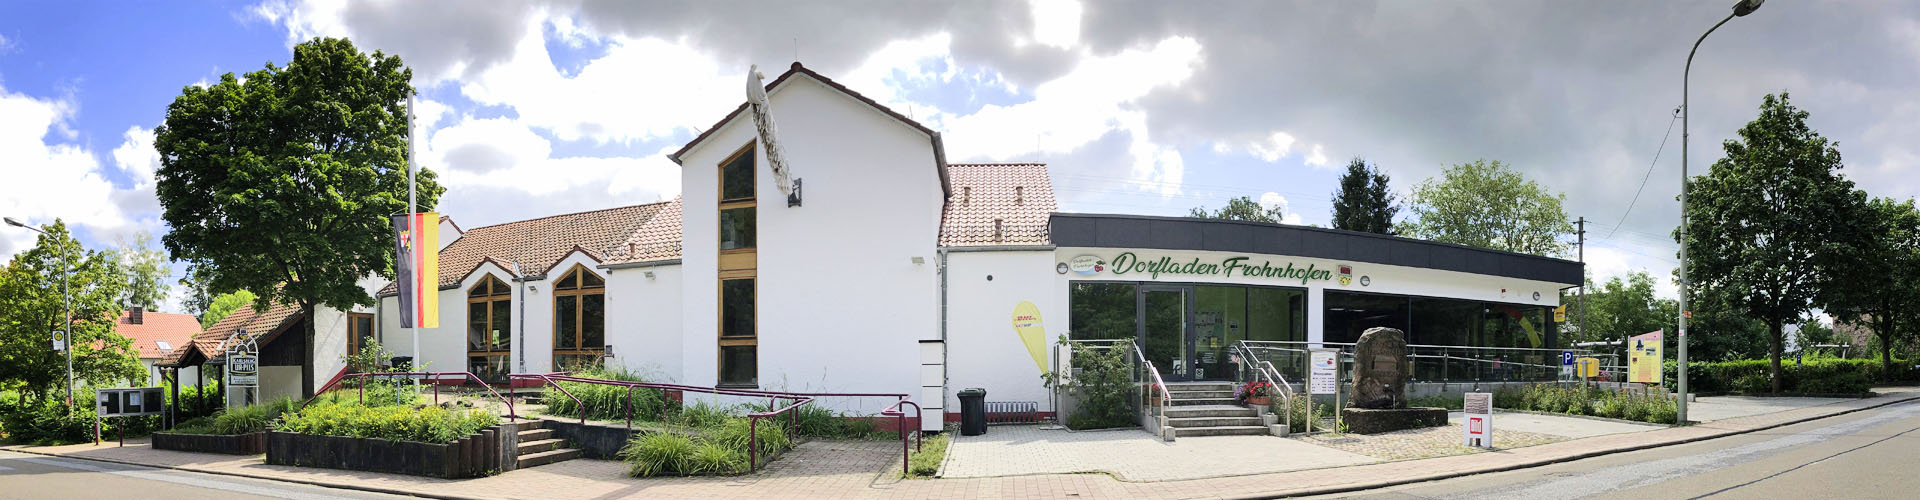 Bürgerhaus, Dorfladen Ortsgemeinde Frohnhofen